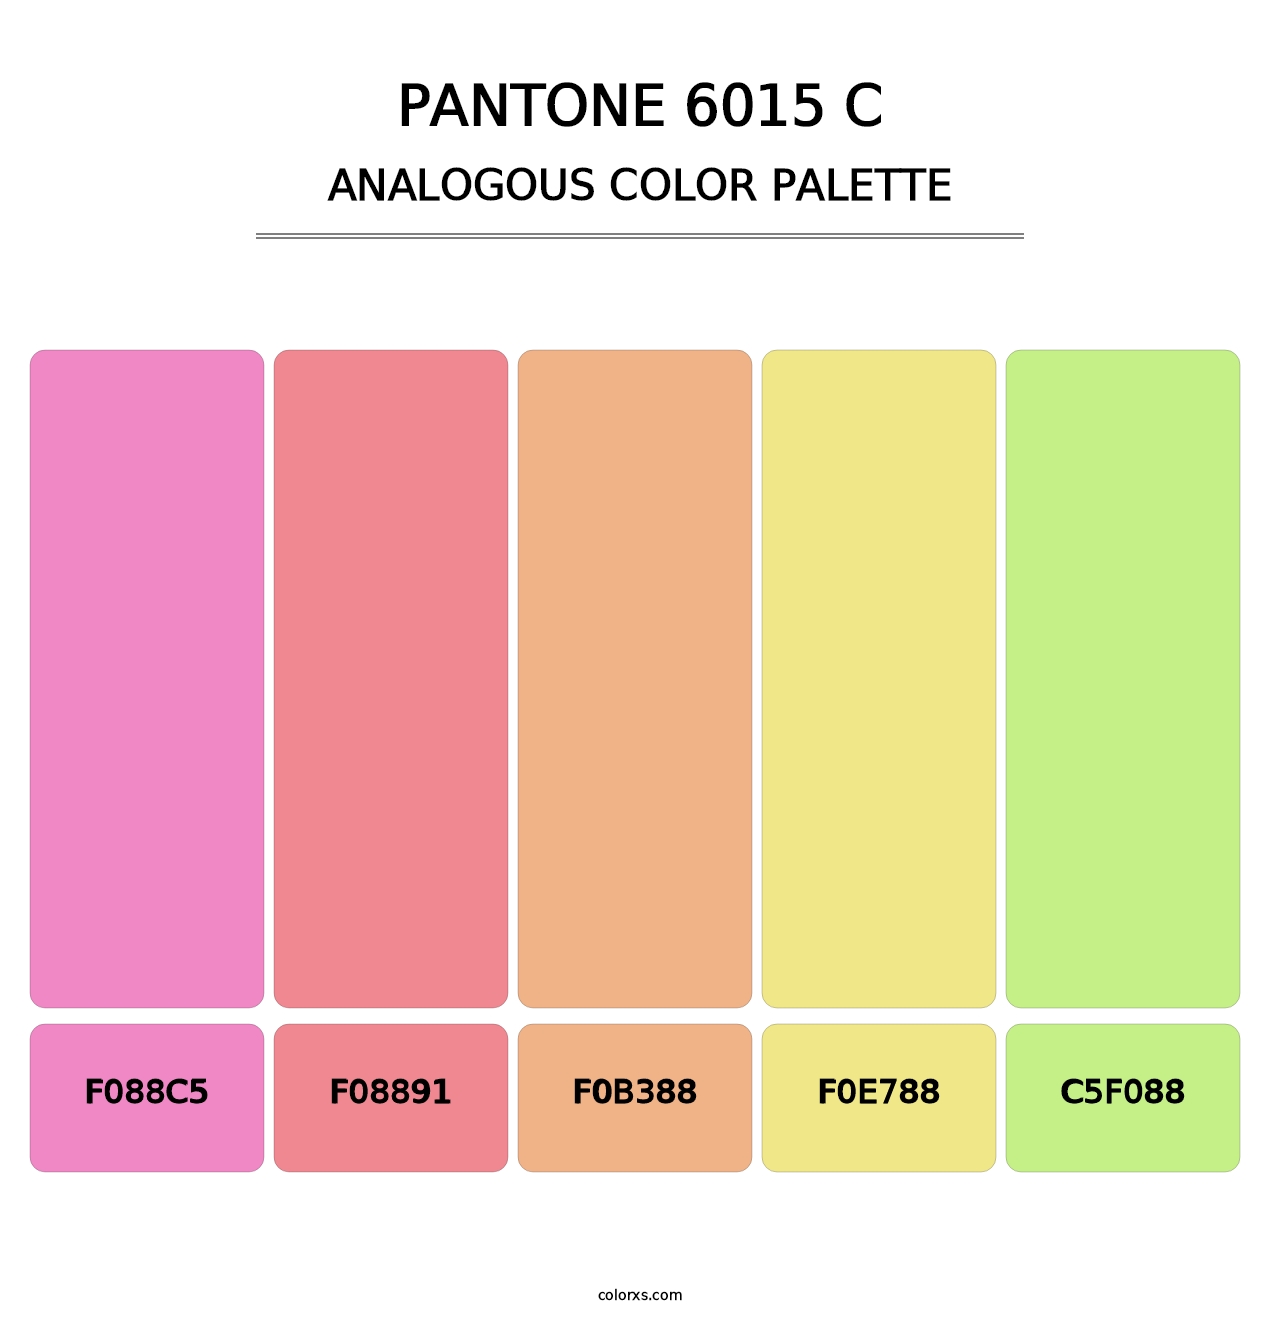 PANTONE 6015 C - Analogous Color Palette